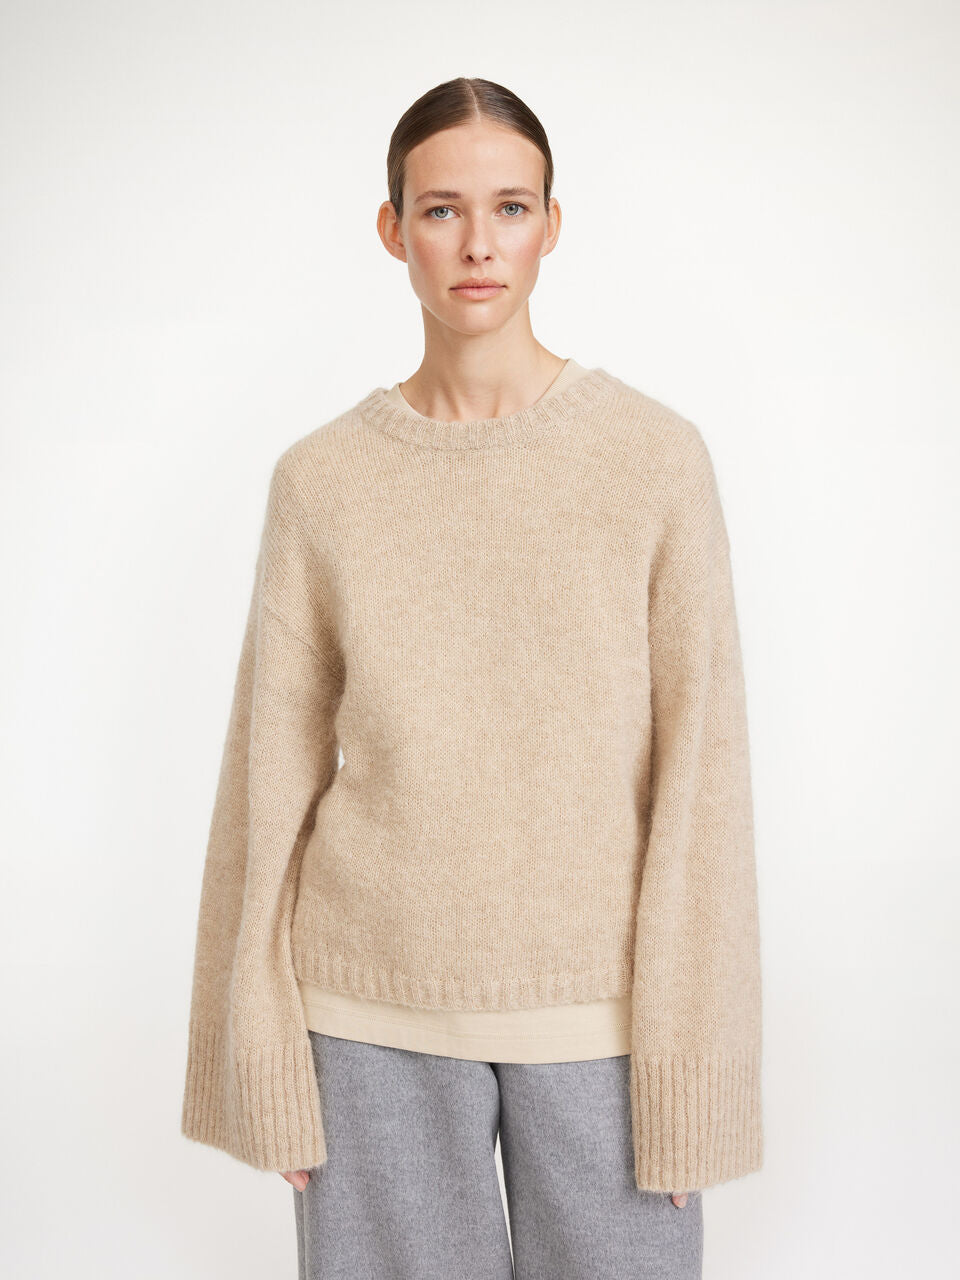 Cierra Sweater: Twill Beige